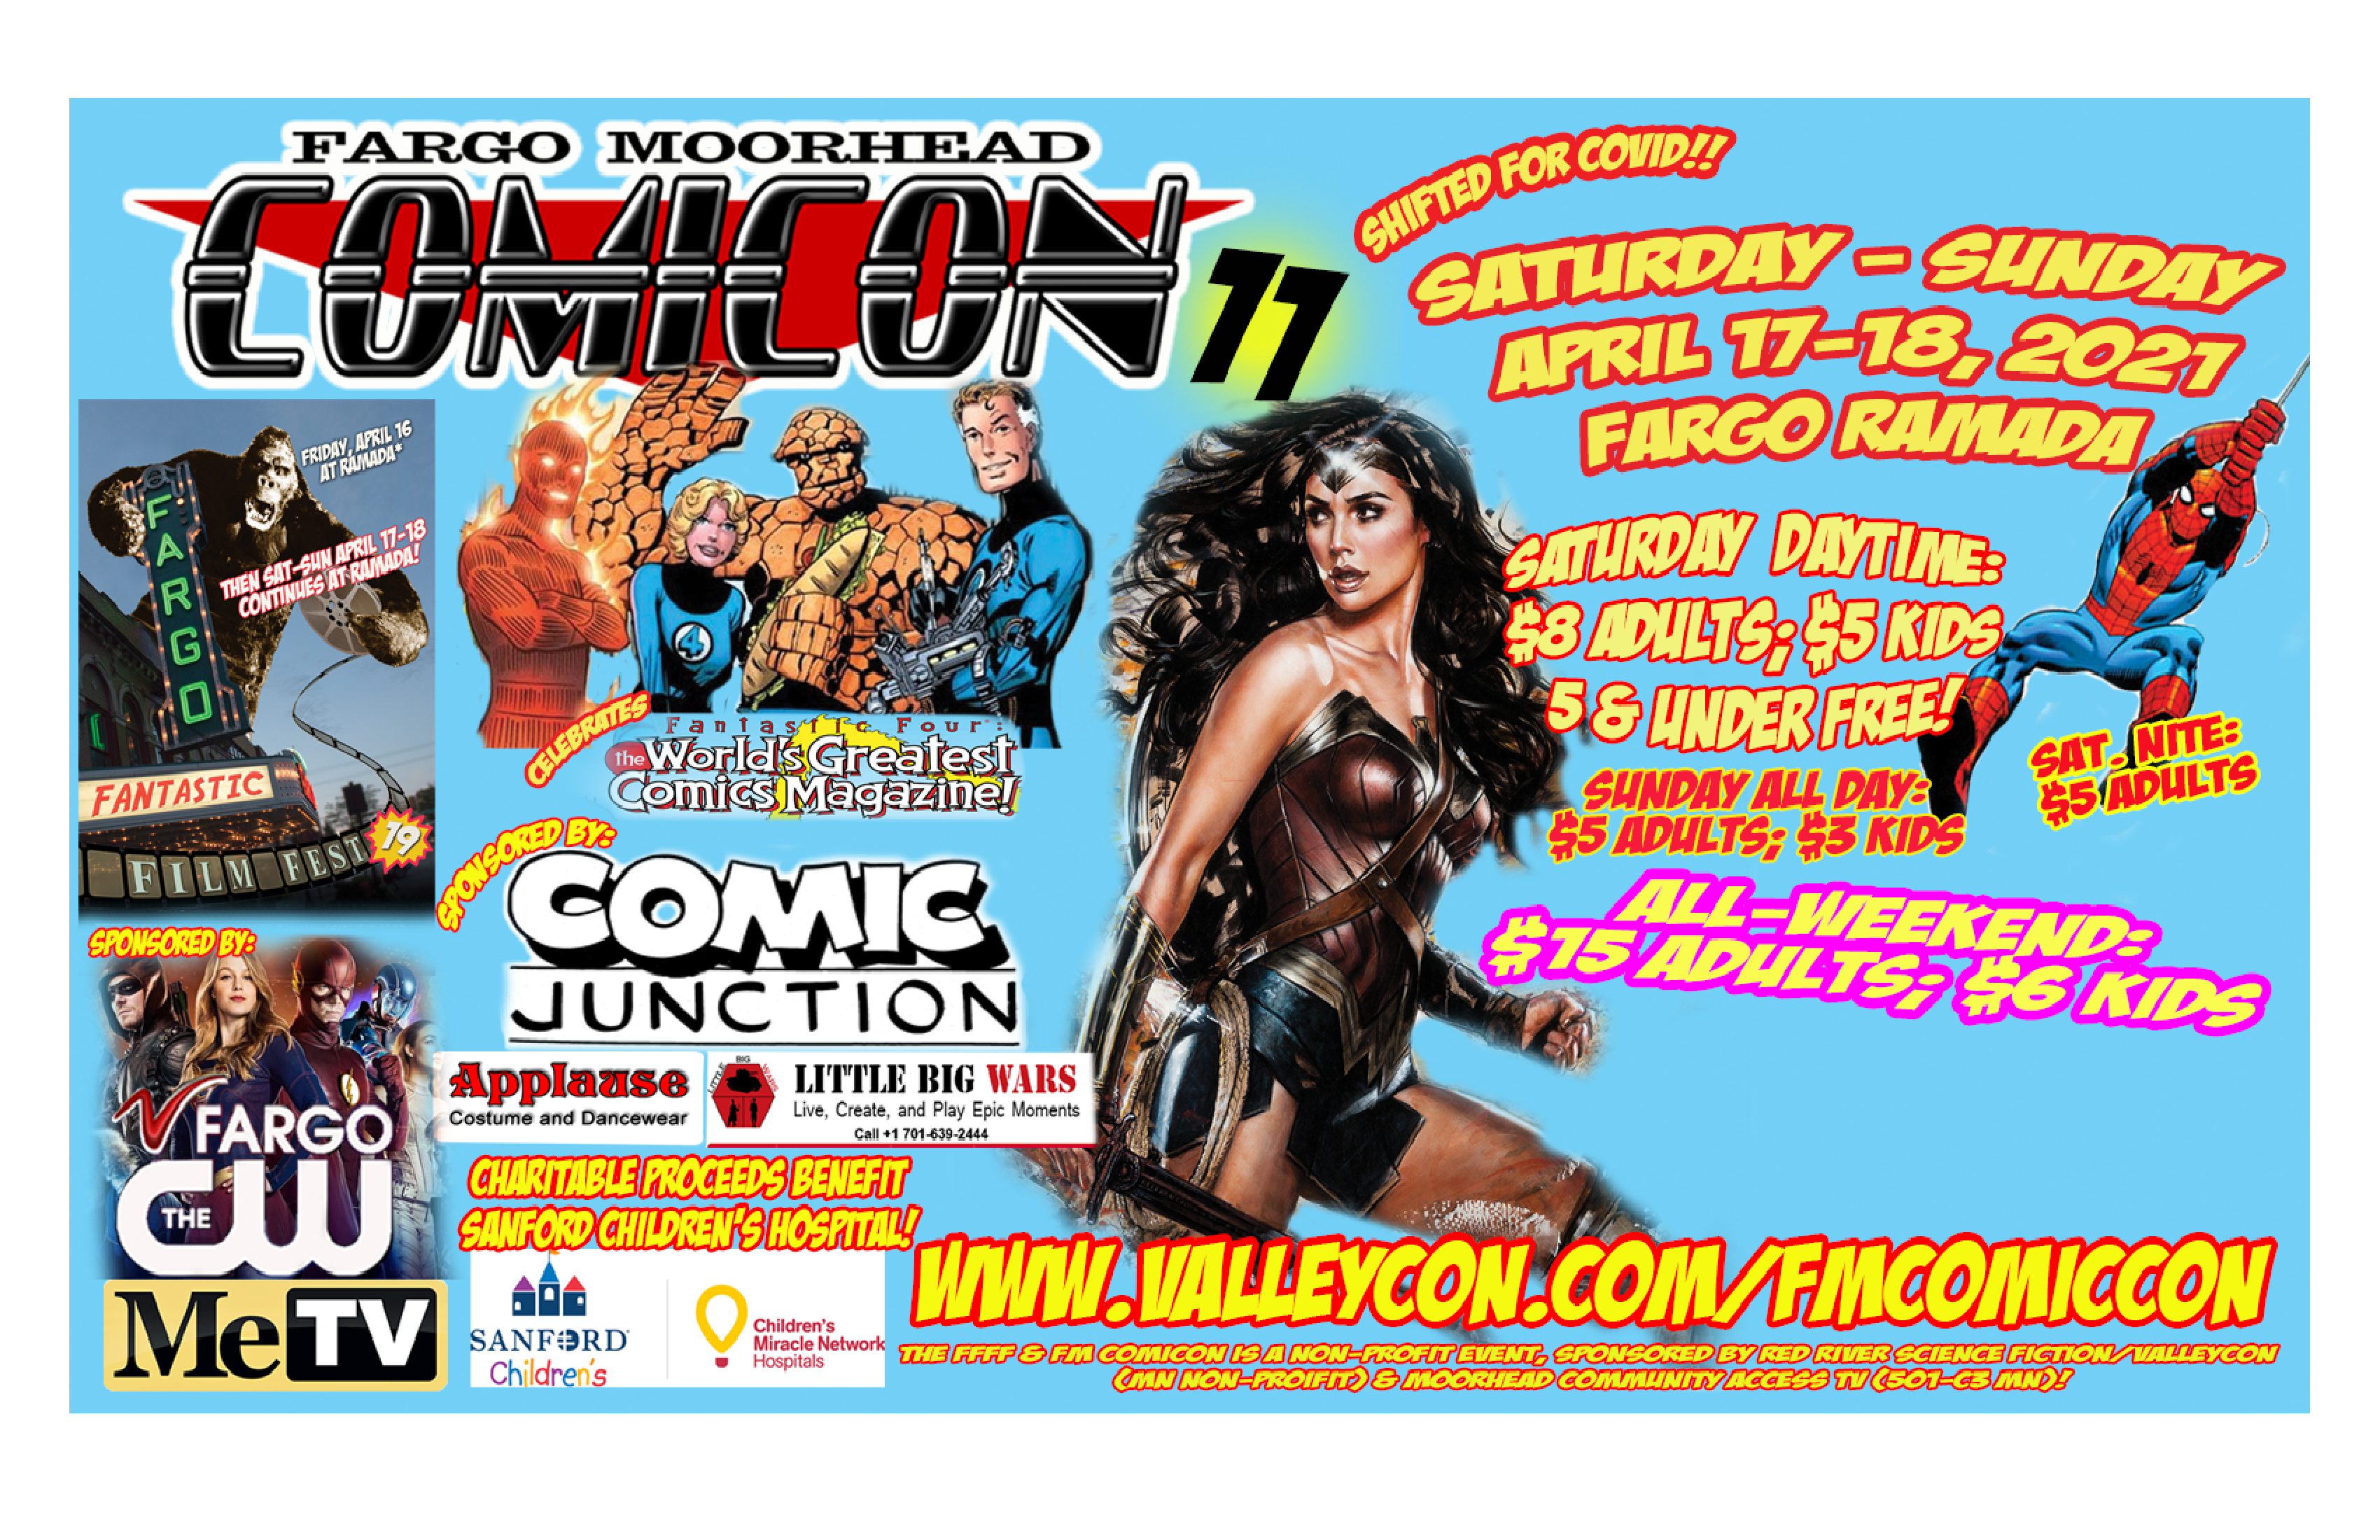 Fargo Moorhead Comic Con poster logo